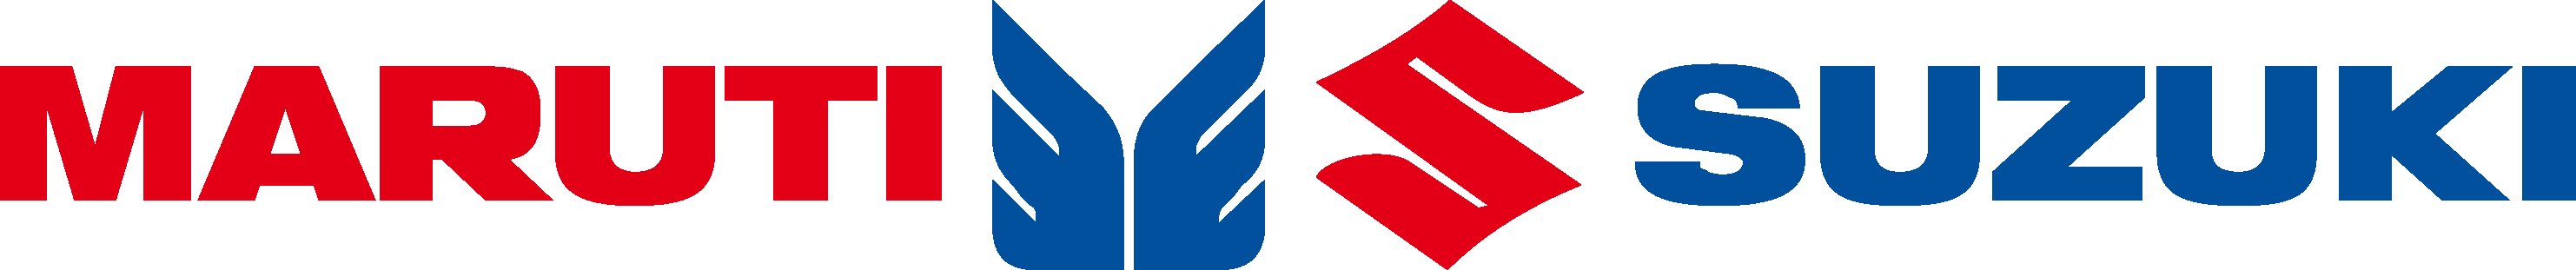 Maruti Suzuki Logo - Maruti Suzuki Logo Vector Free Download